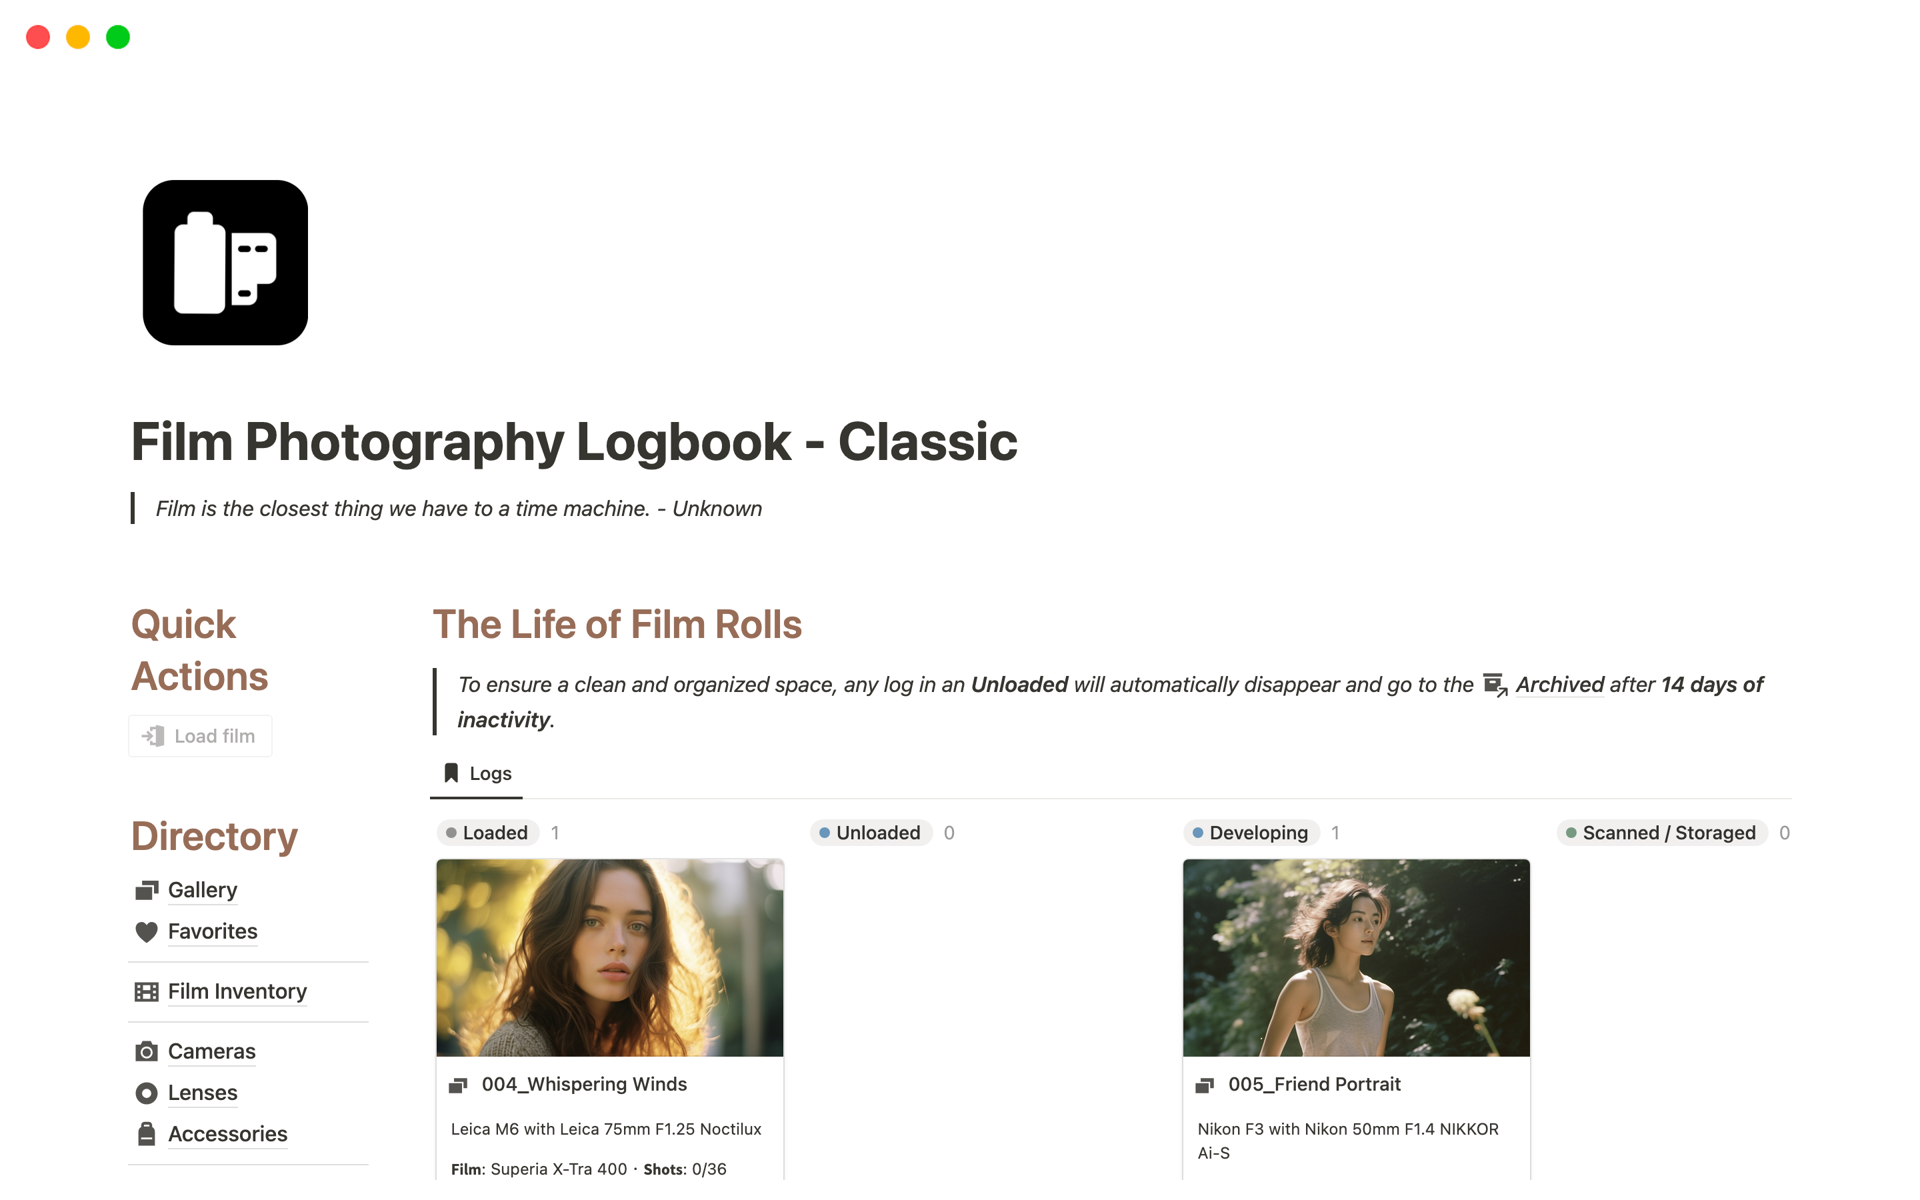 Film Photography Logbook - Classic님의 템플릿 미리보기